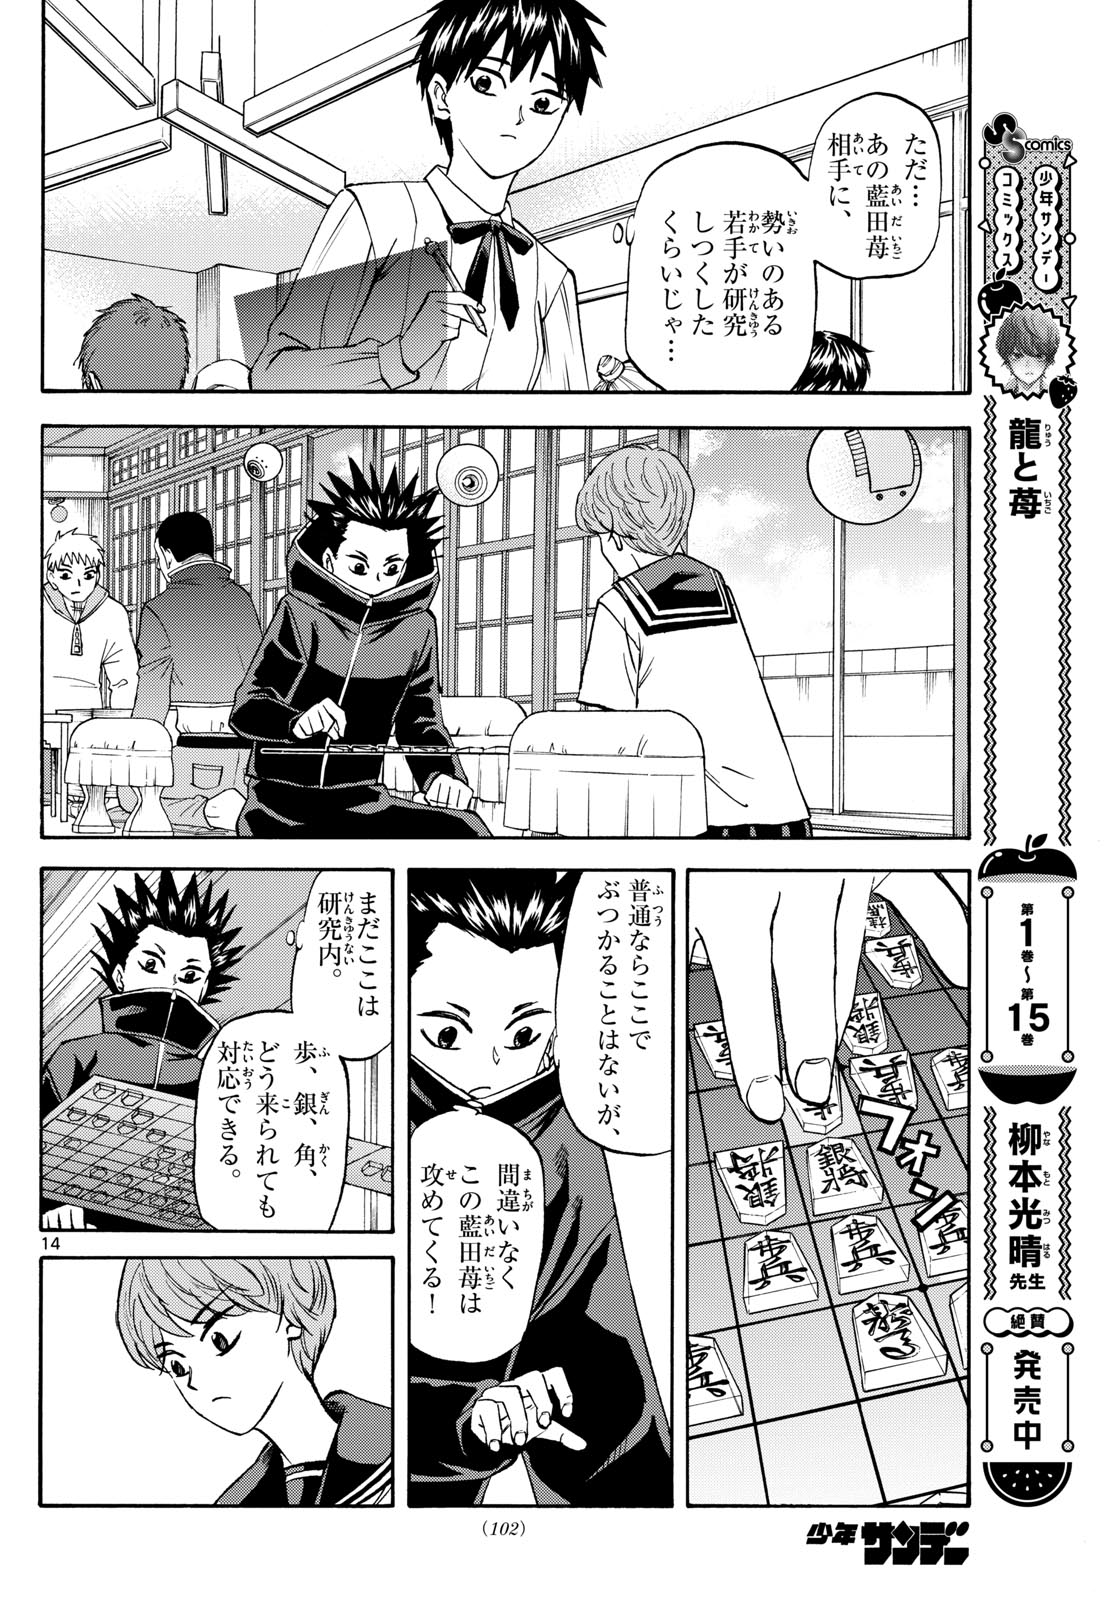 Tatsu to Ichigo - Chapter 191 - Page 14